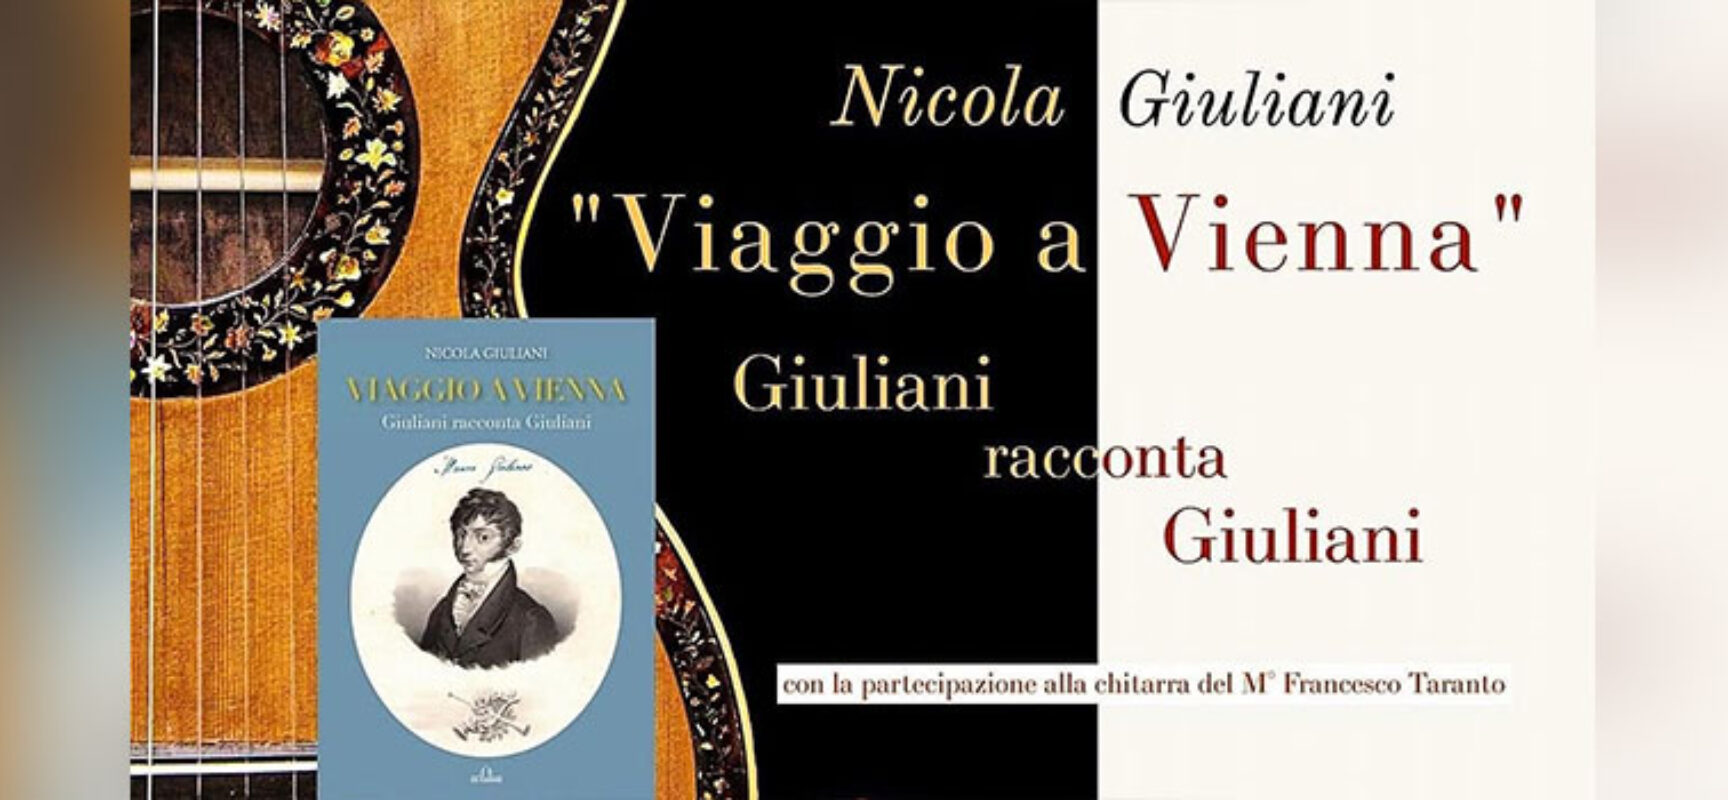 Il libro “Viaggio a Vienna. Giuliani racconta Giuliani” presentato oggi all’International Exhibitions